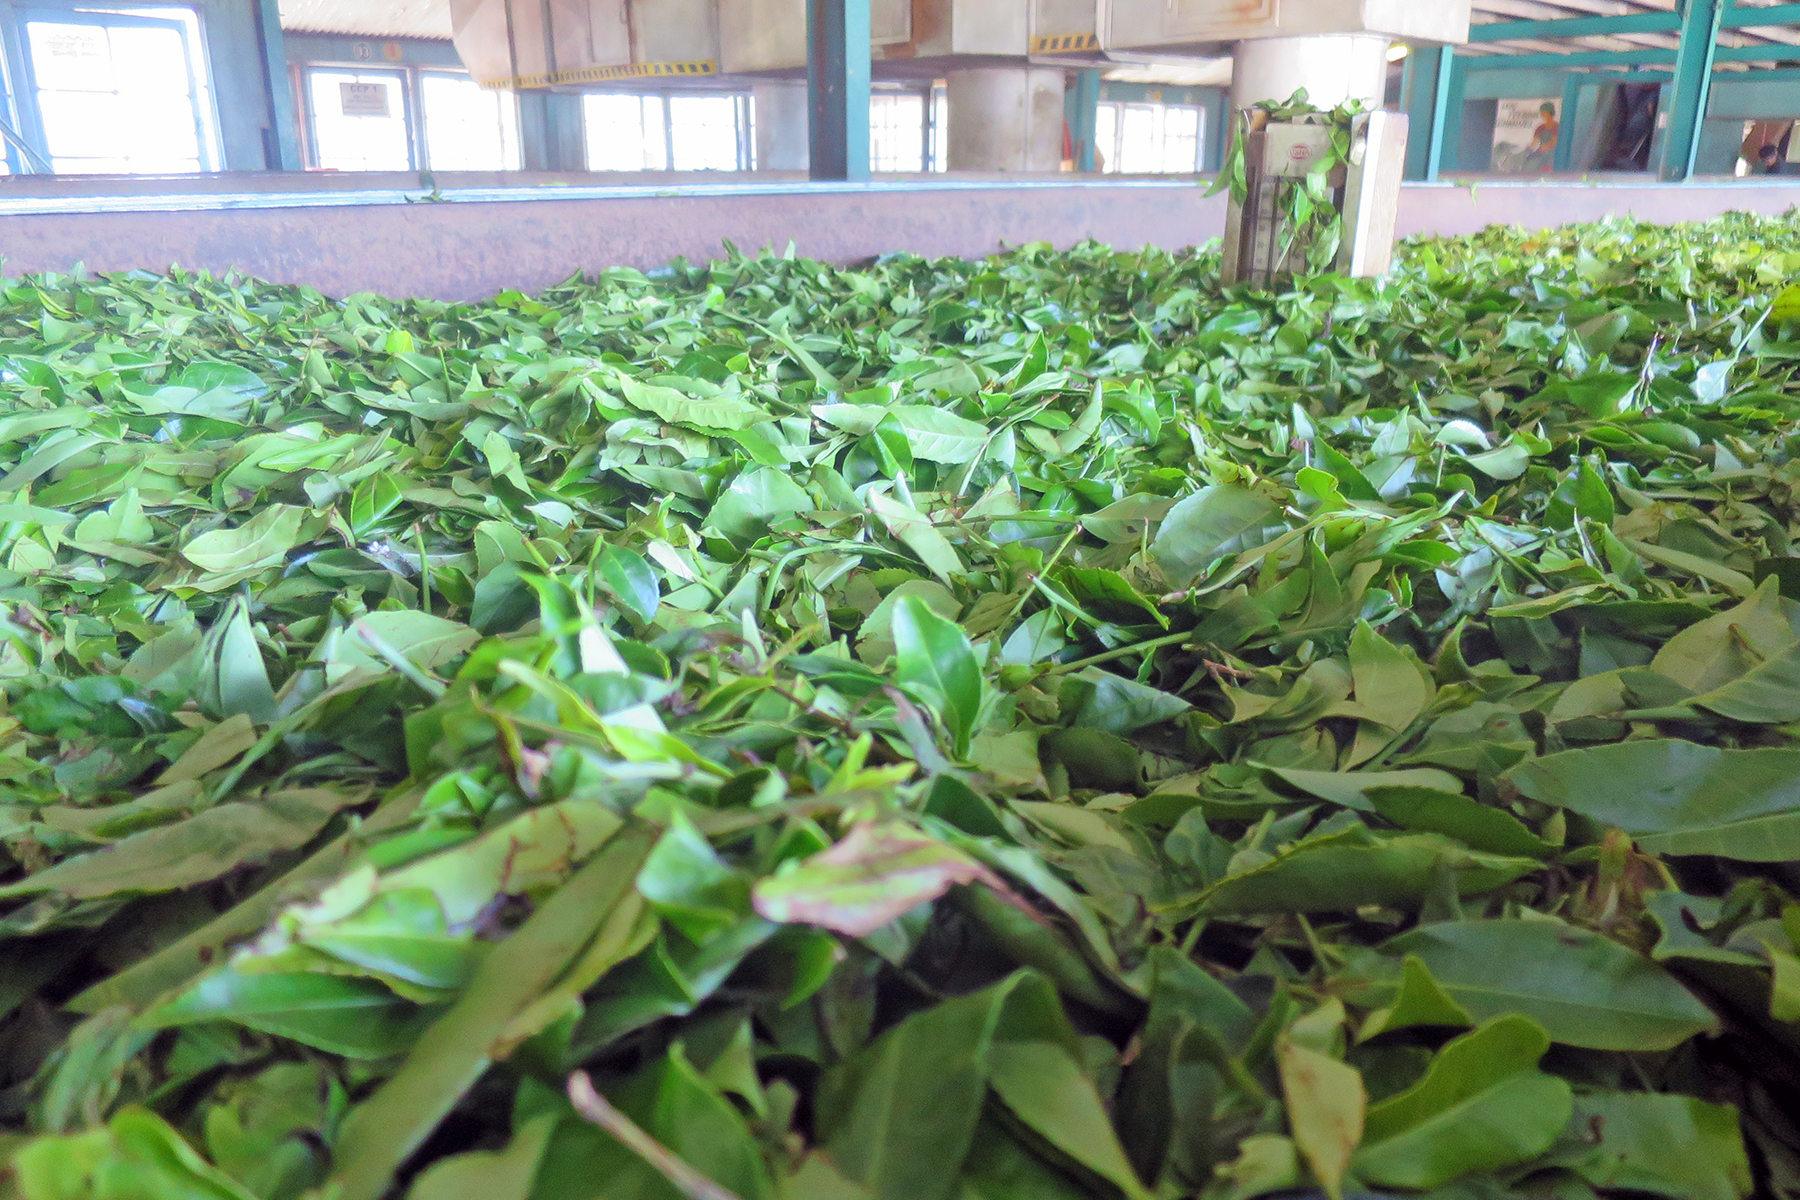 Abwarten und Tee trinken: Reise zu den Tee-Plantagen auf Sri Lanka